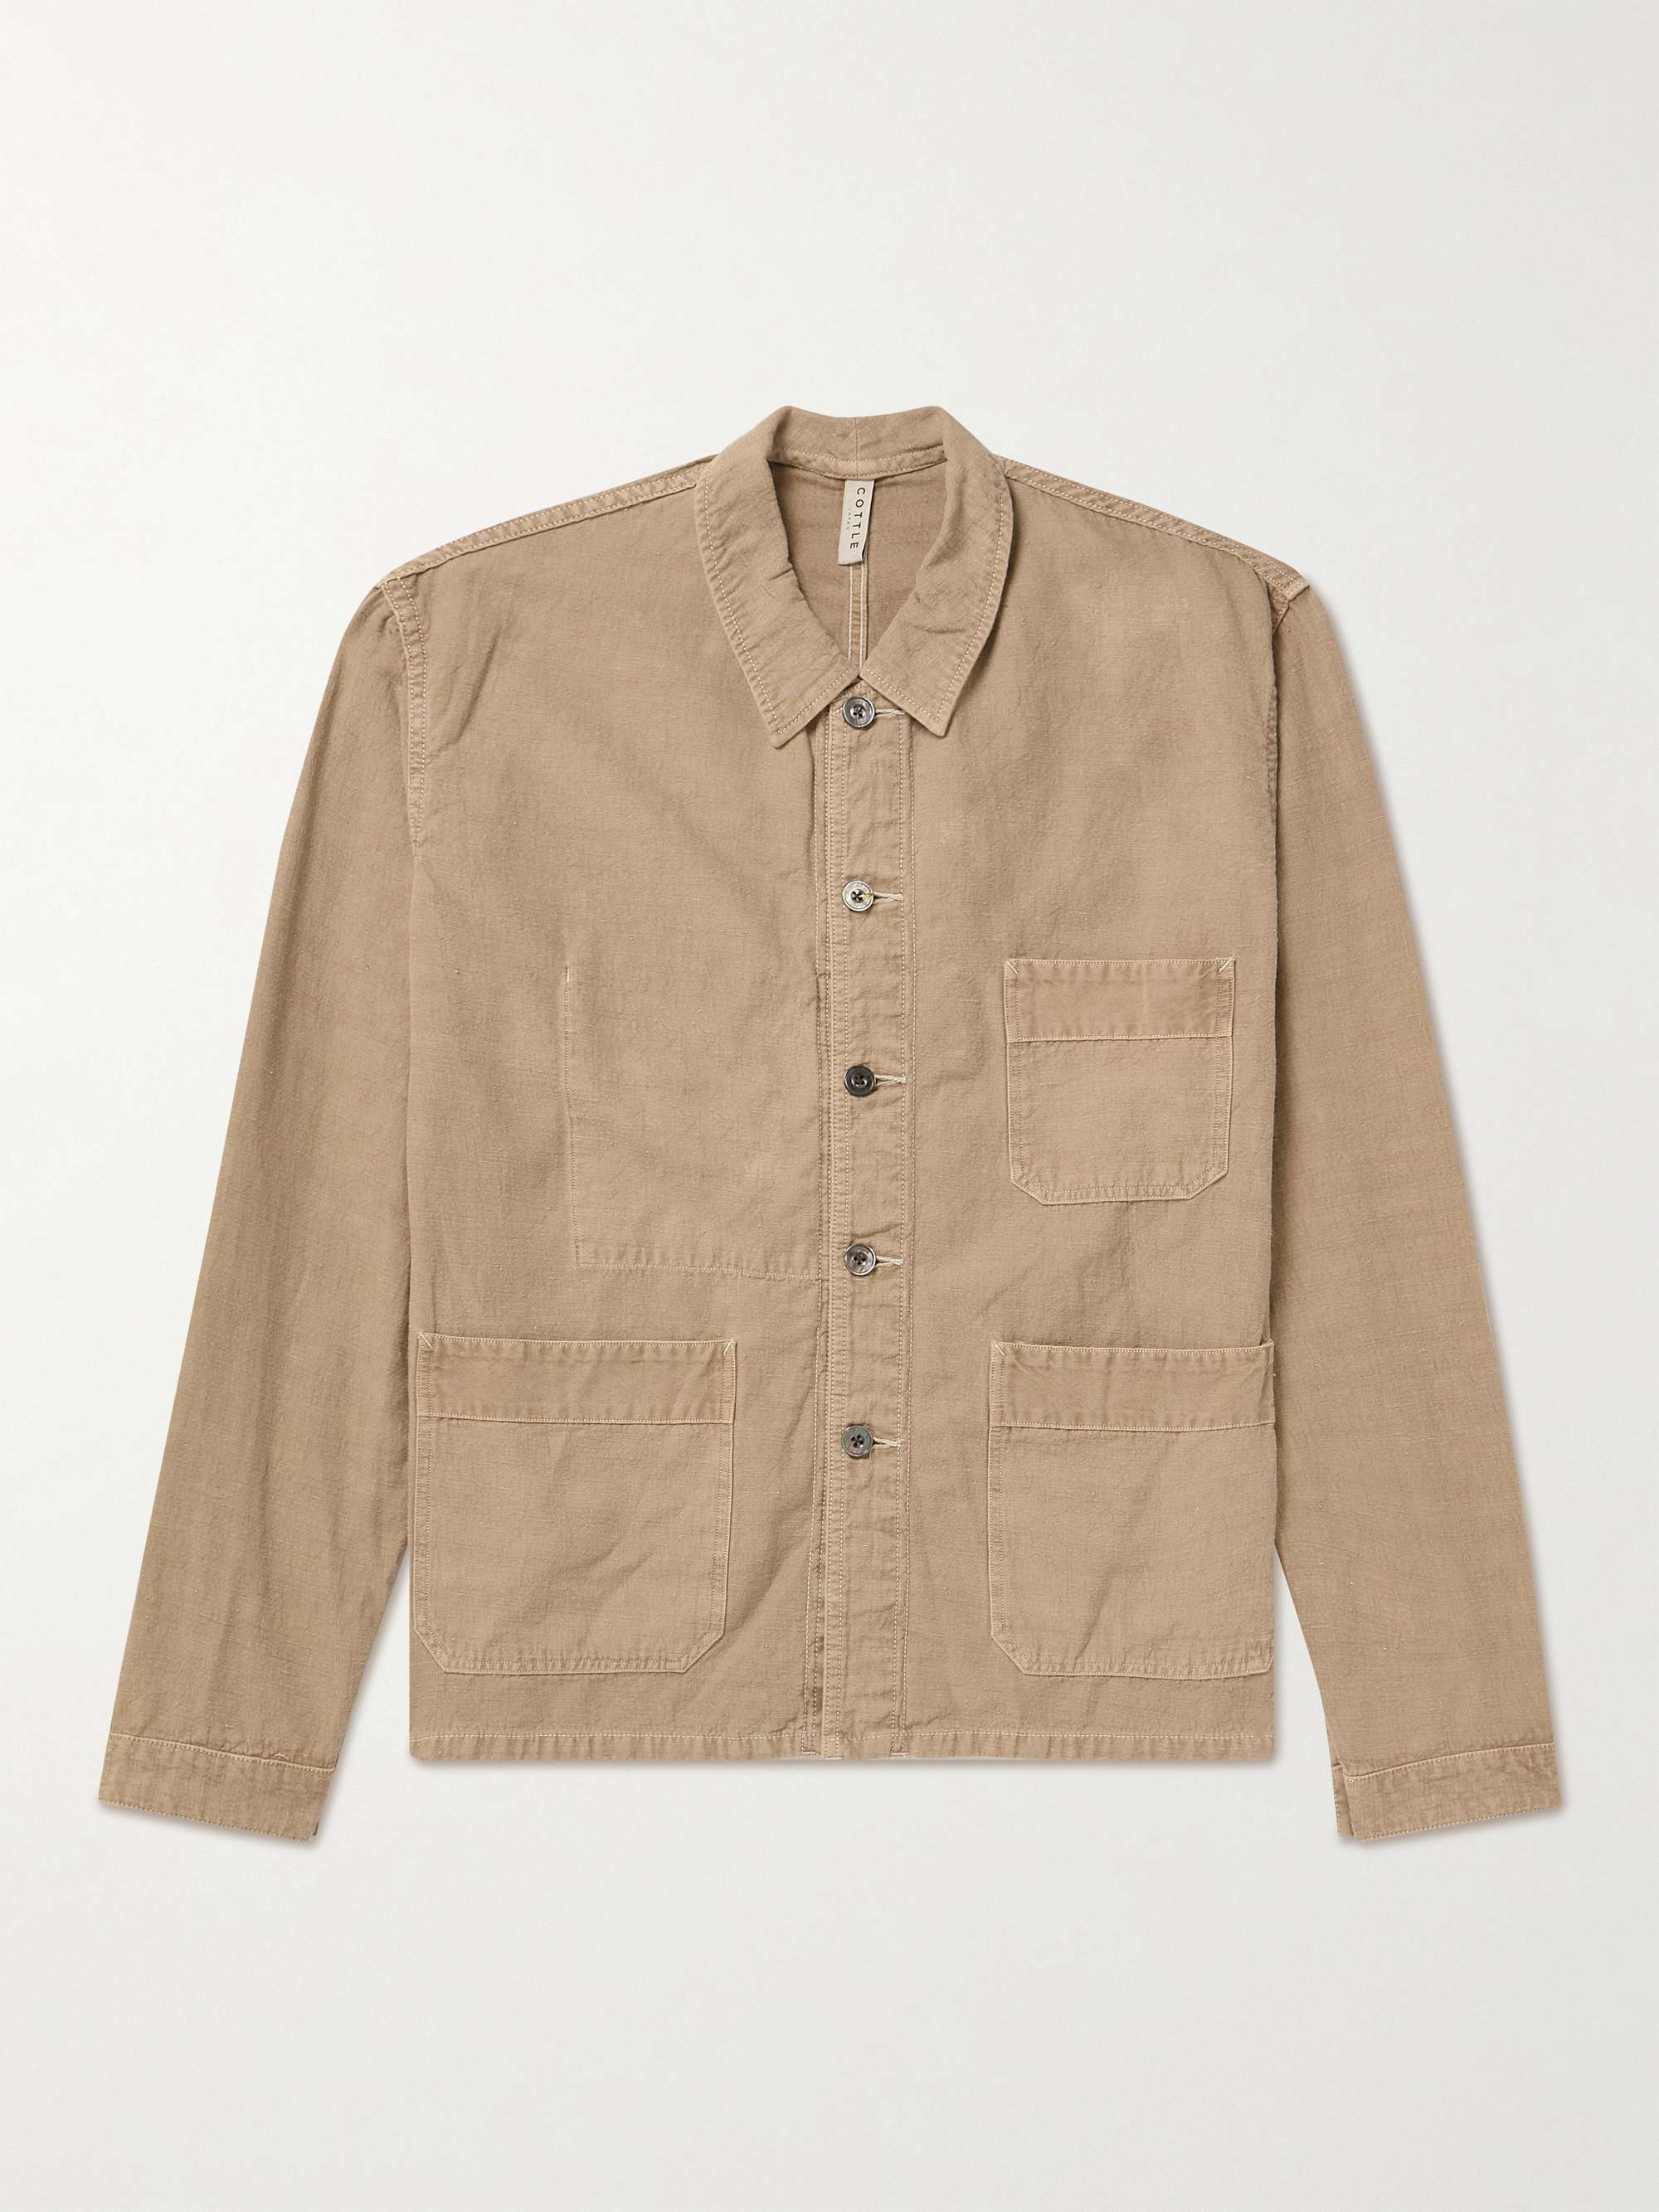 COTTLE Itto Unsai Cotton and Linen-Blend Chore Jacket